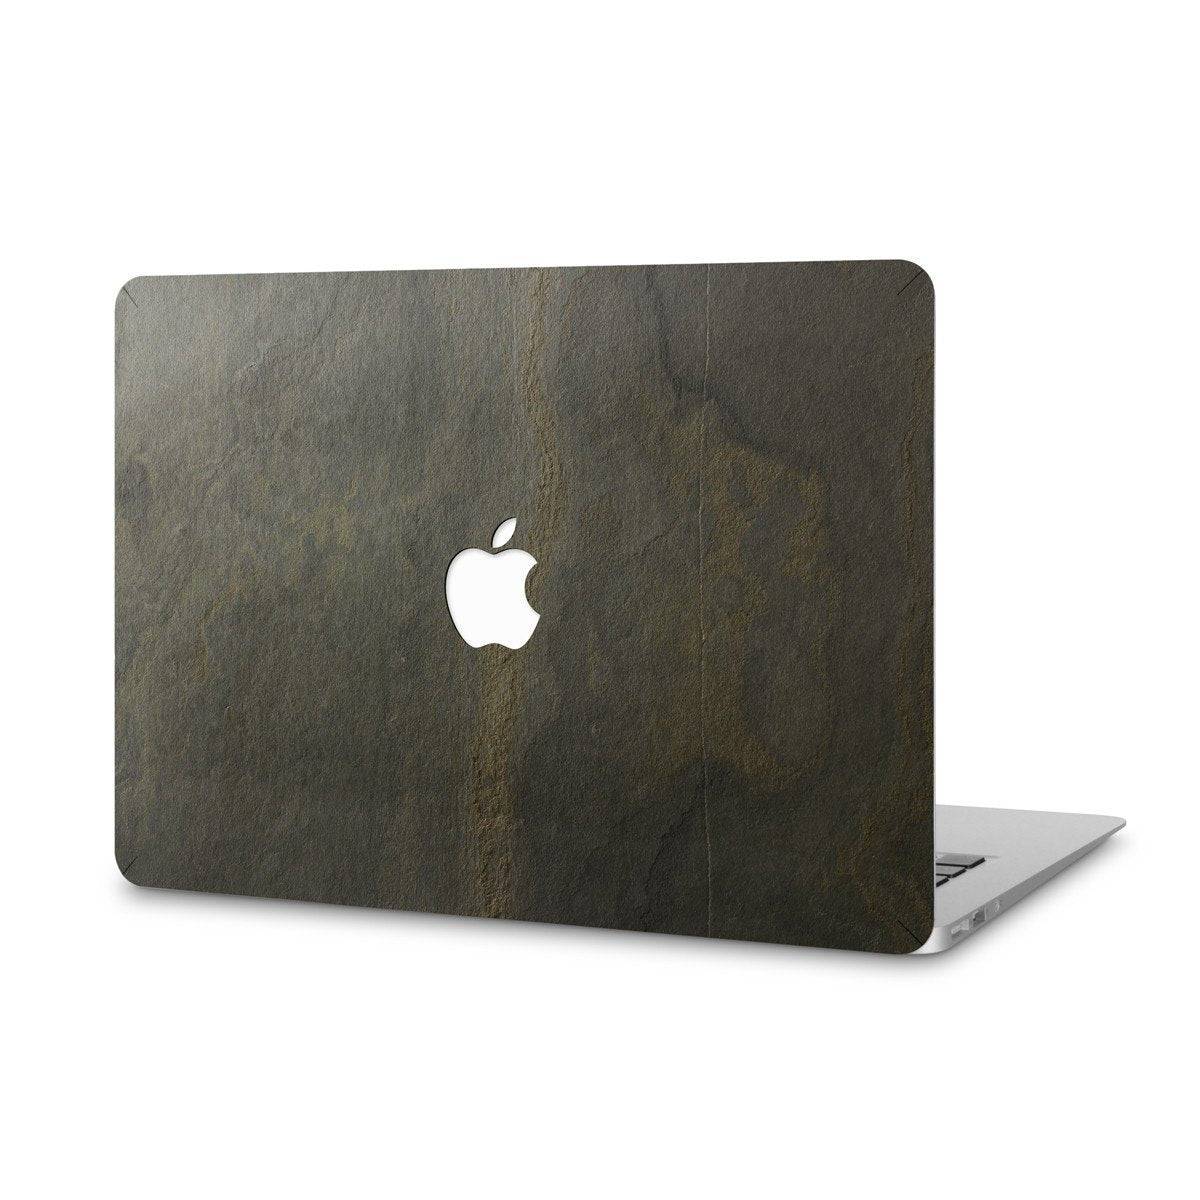 Macbook air gold • Se (300+ produkter) hos PriceRunner »